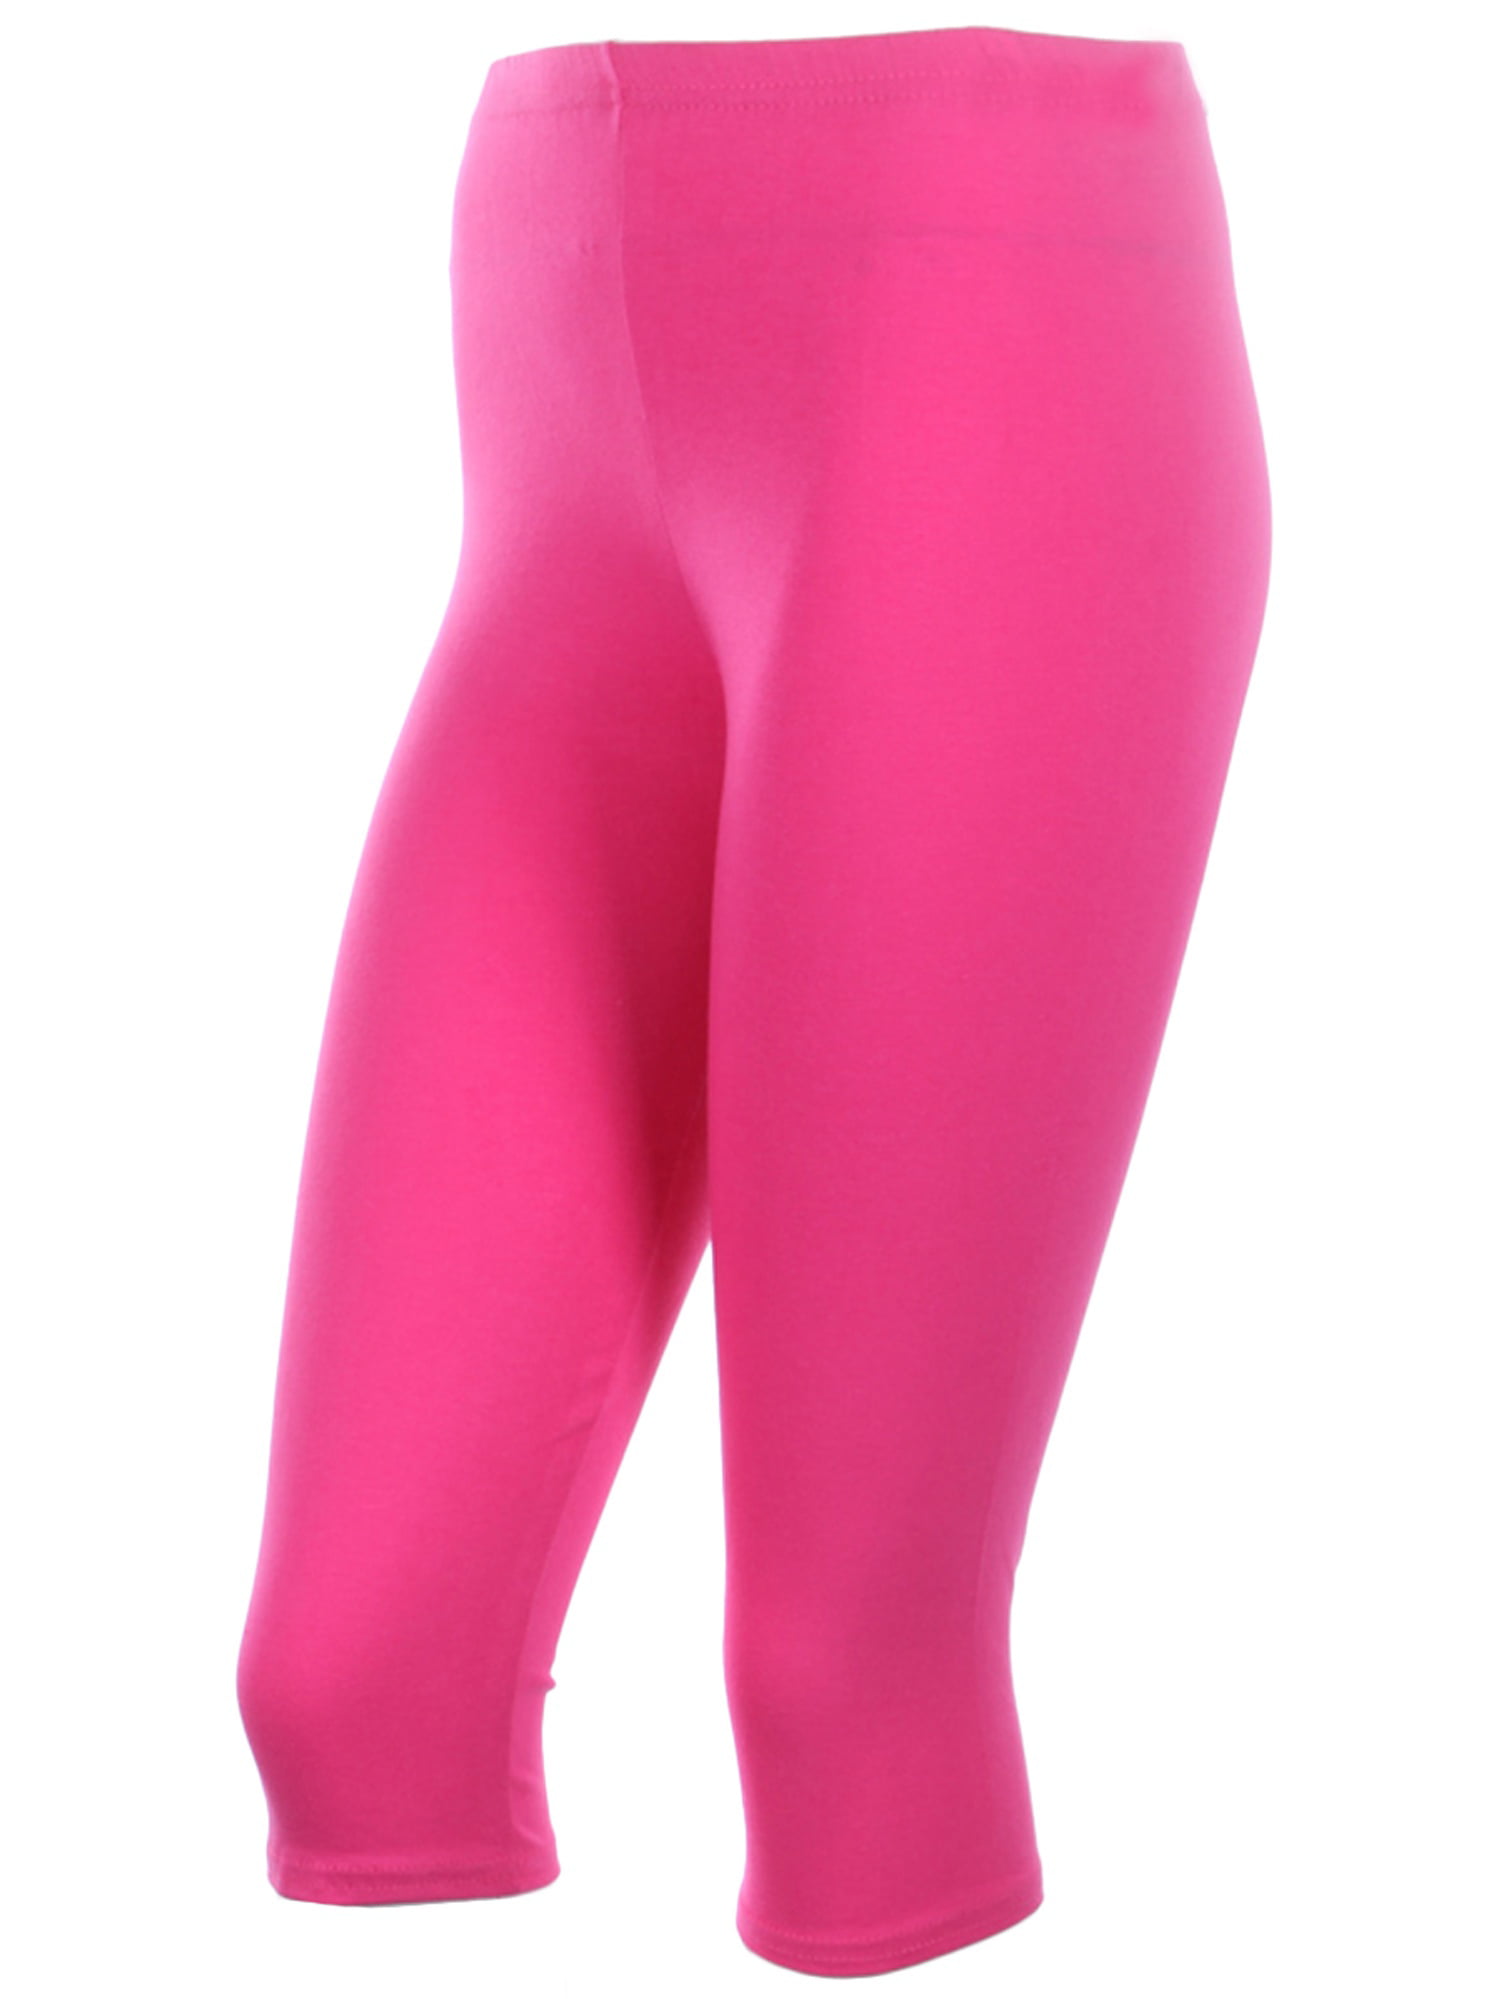 NEVA Women Cotton Capri Pants- Hot Pink